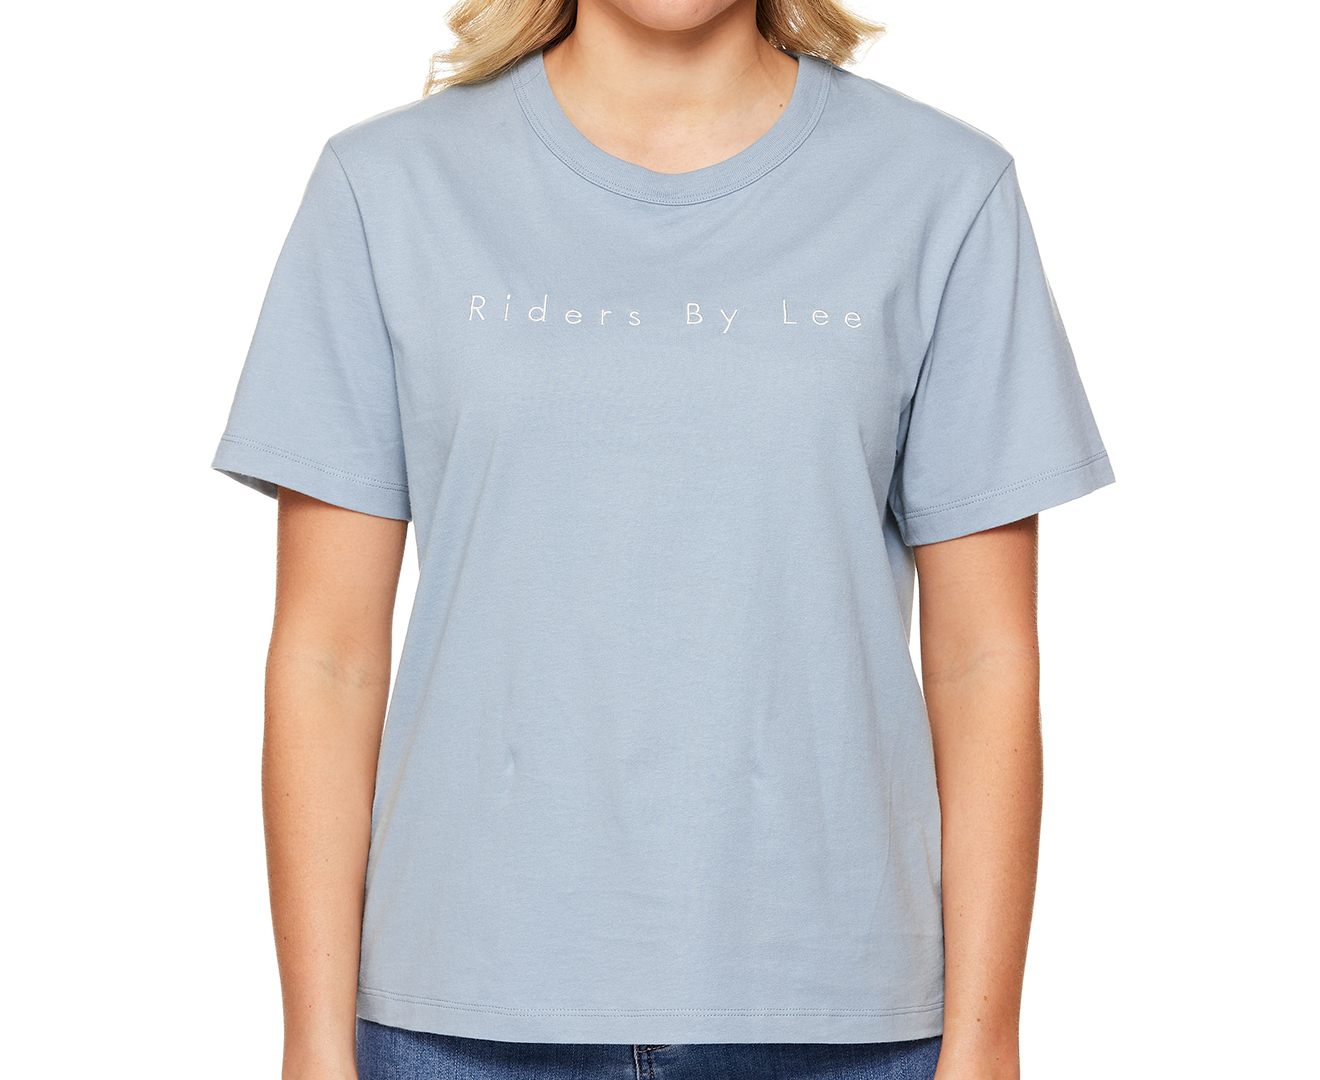 Lee Women's T-Shirt - Blue - S